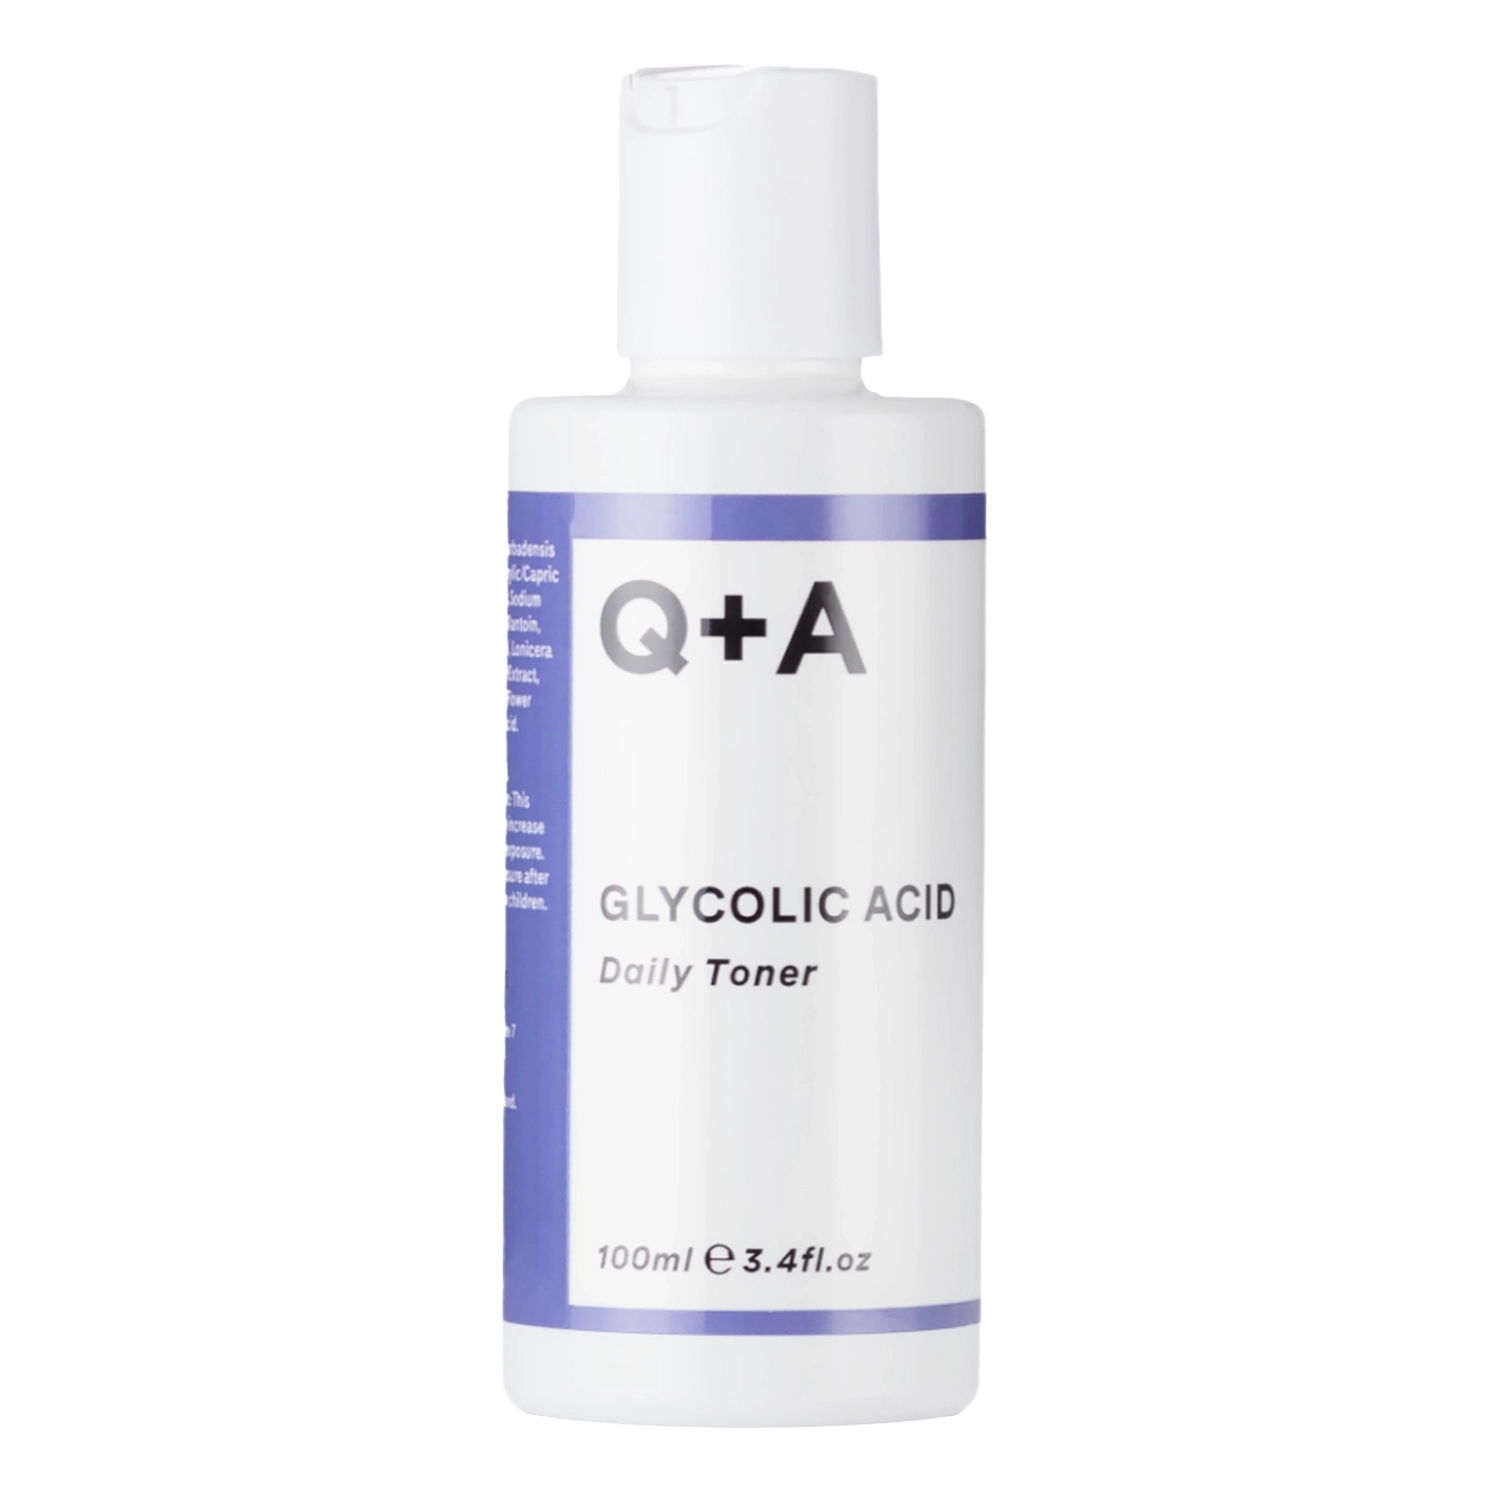 Q+A - Glycolic Acid Daily Toner - Gesichtswasser mit Glykolsäure - 100ml